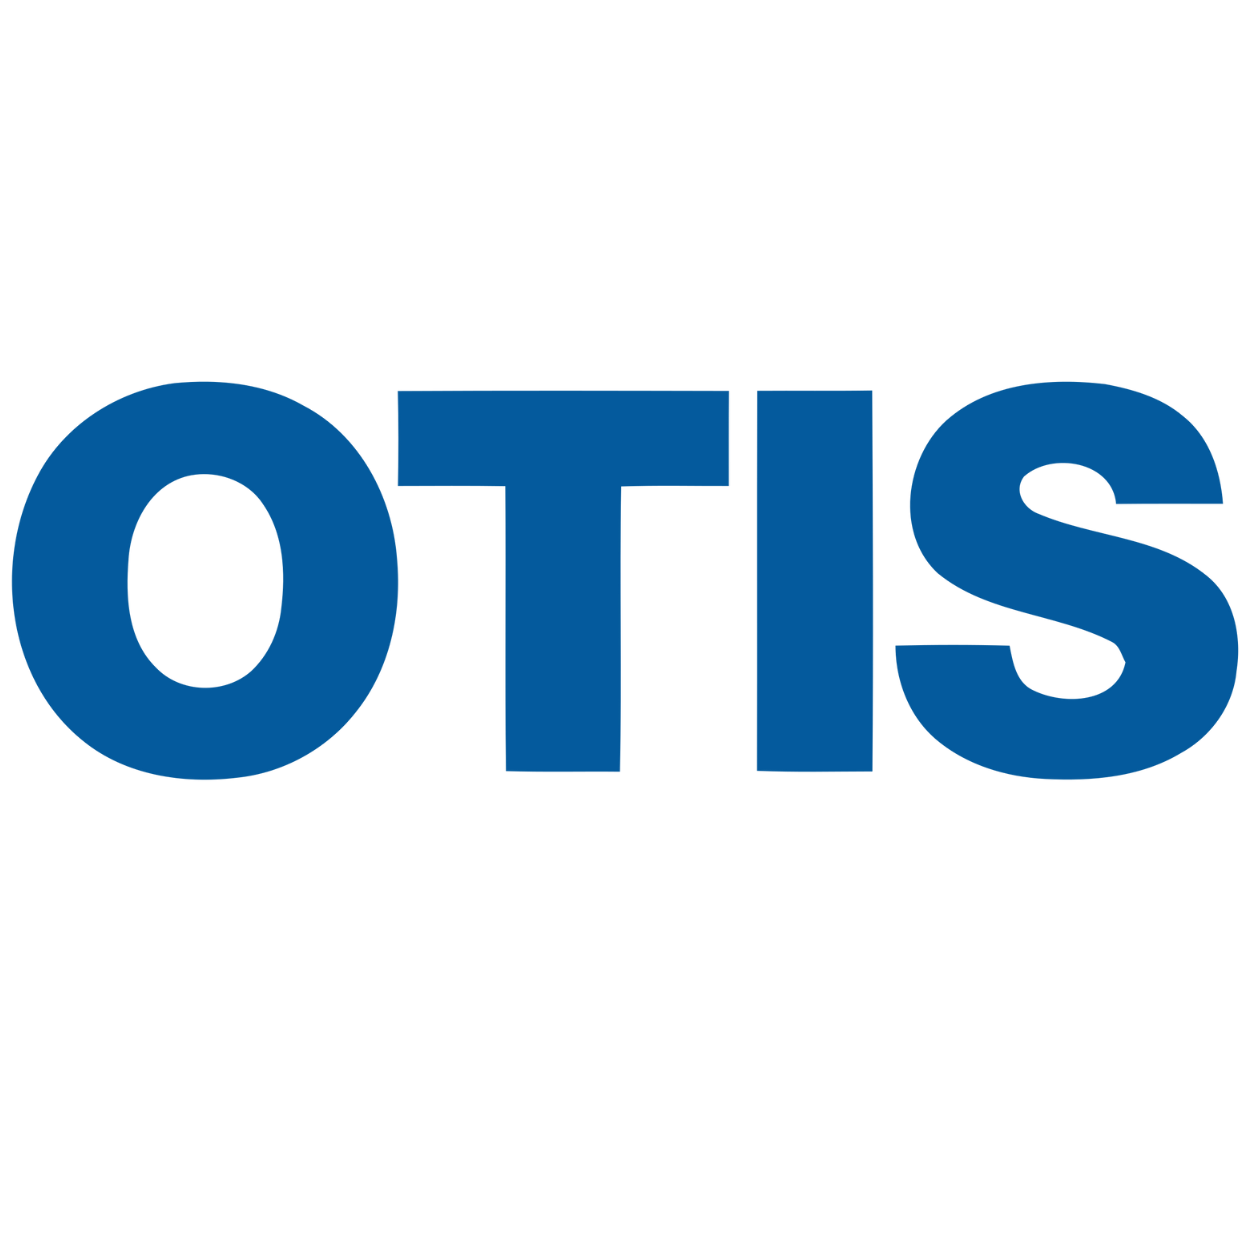 Otis  : Brand Short Description Type Here.